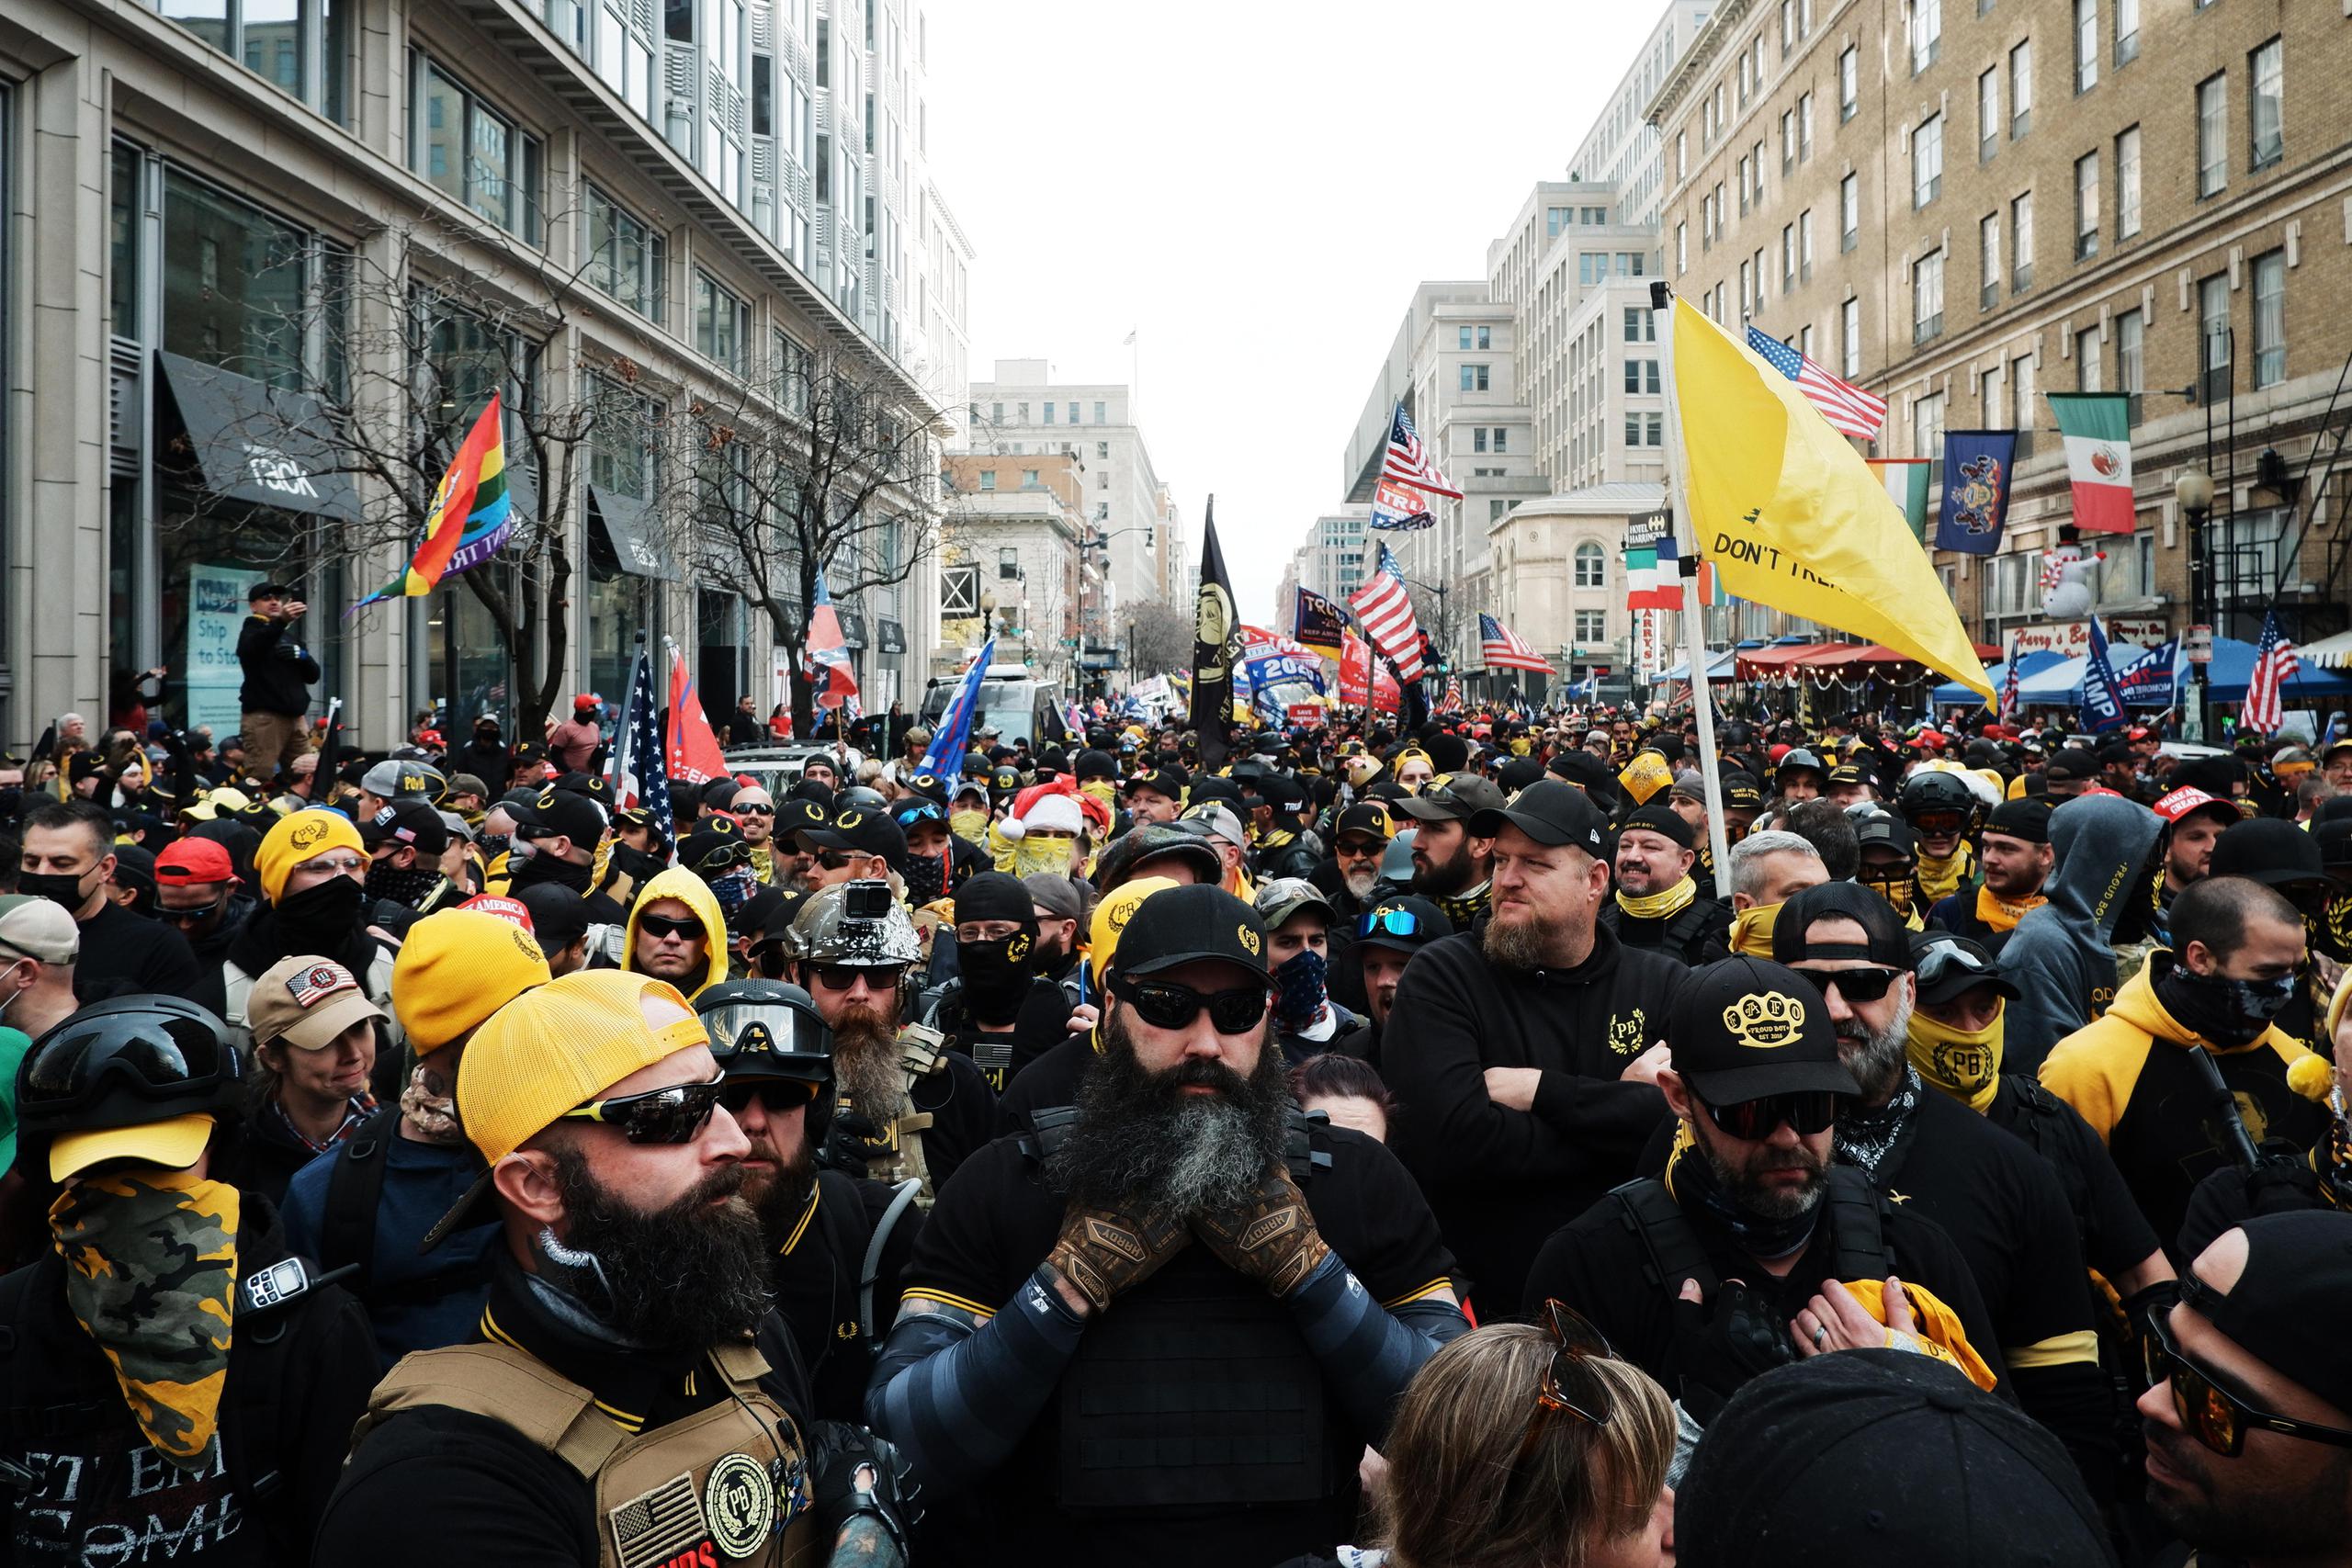 Los miembros del grupo de extrema derecha Proud Boys se reúnen antes de marchar hacia Freedom Plaza, en Washington, D.C.